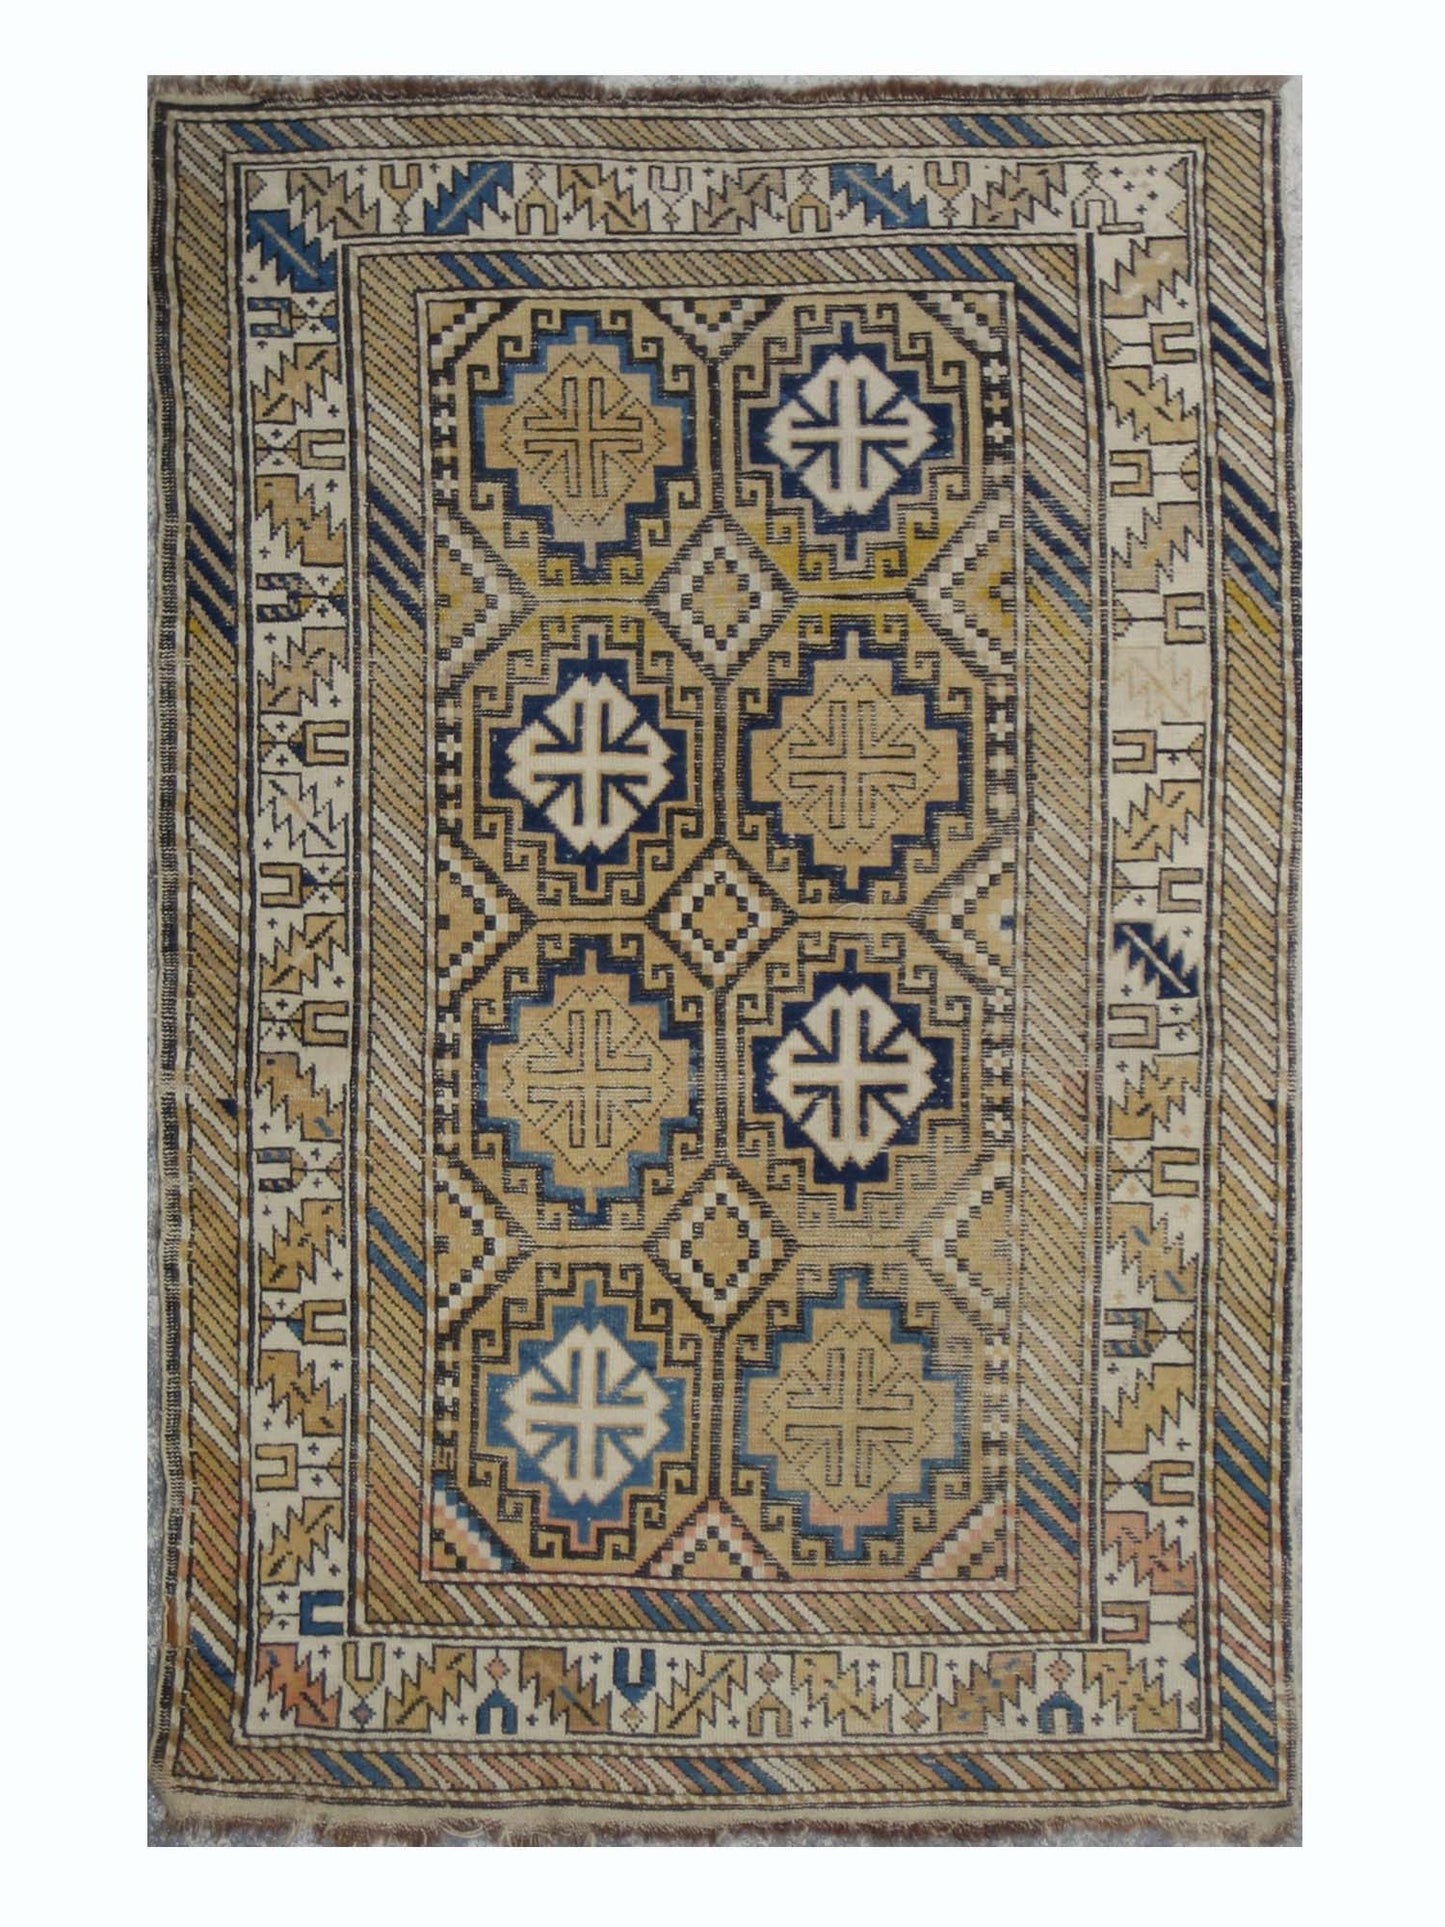 3'x5' Antique Caucasian Rug